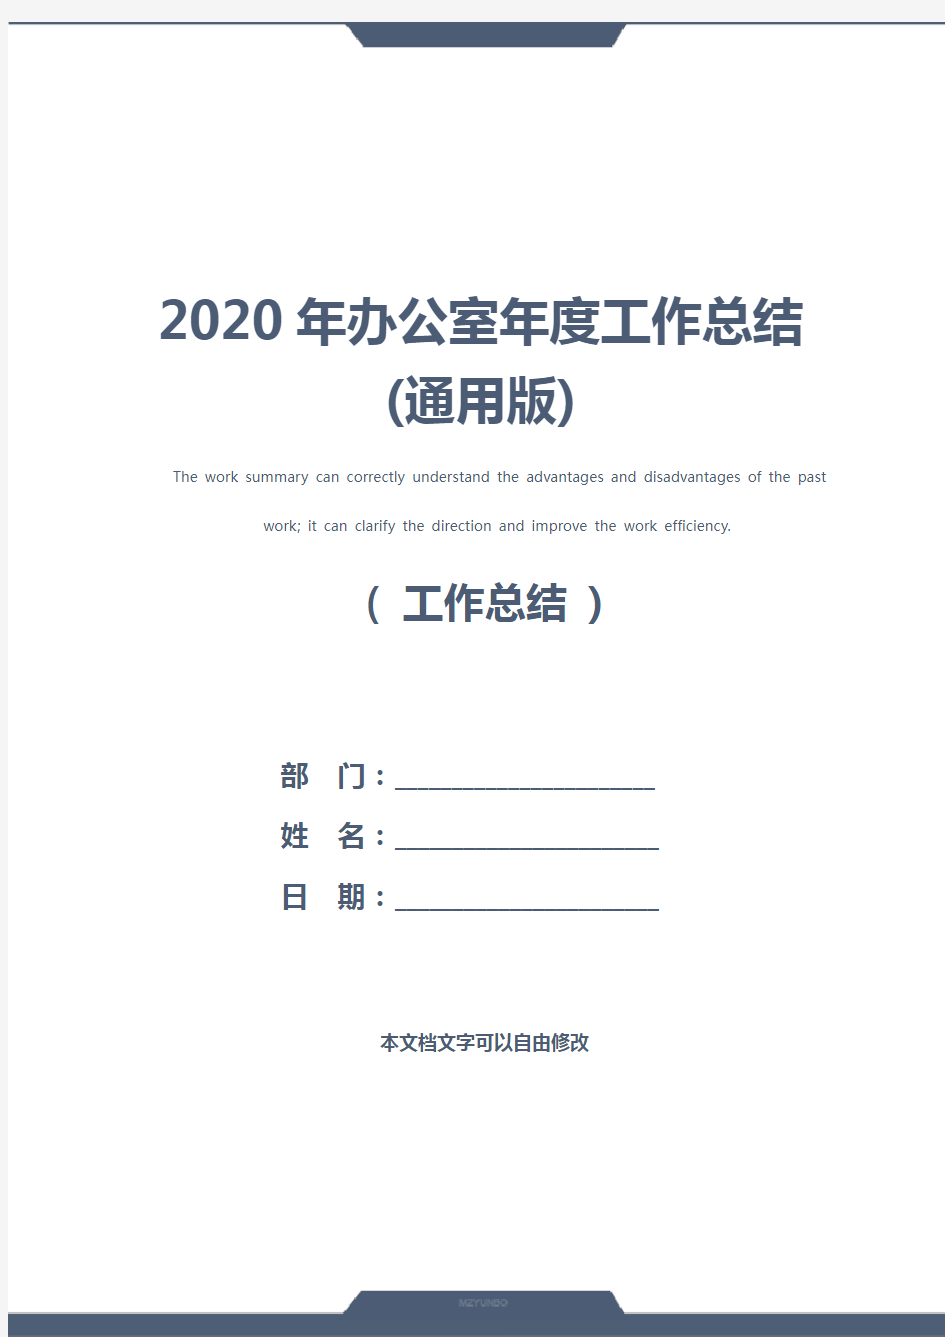 2020年办公室年度工作总结(通用版)